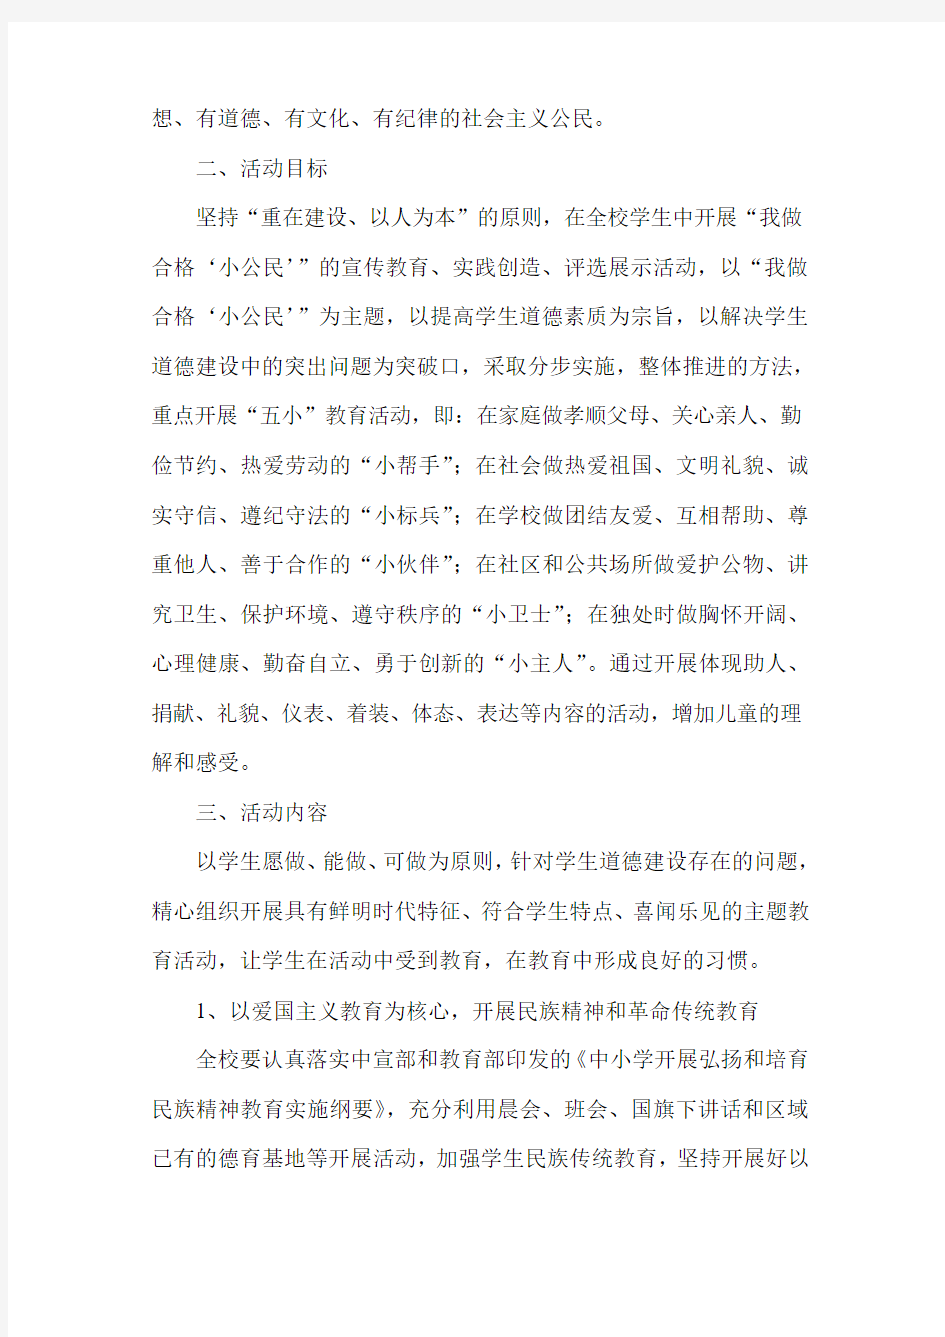 芜湖工业学校公民道德建设活动实施方案